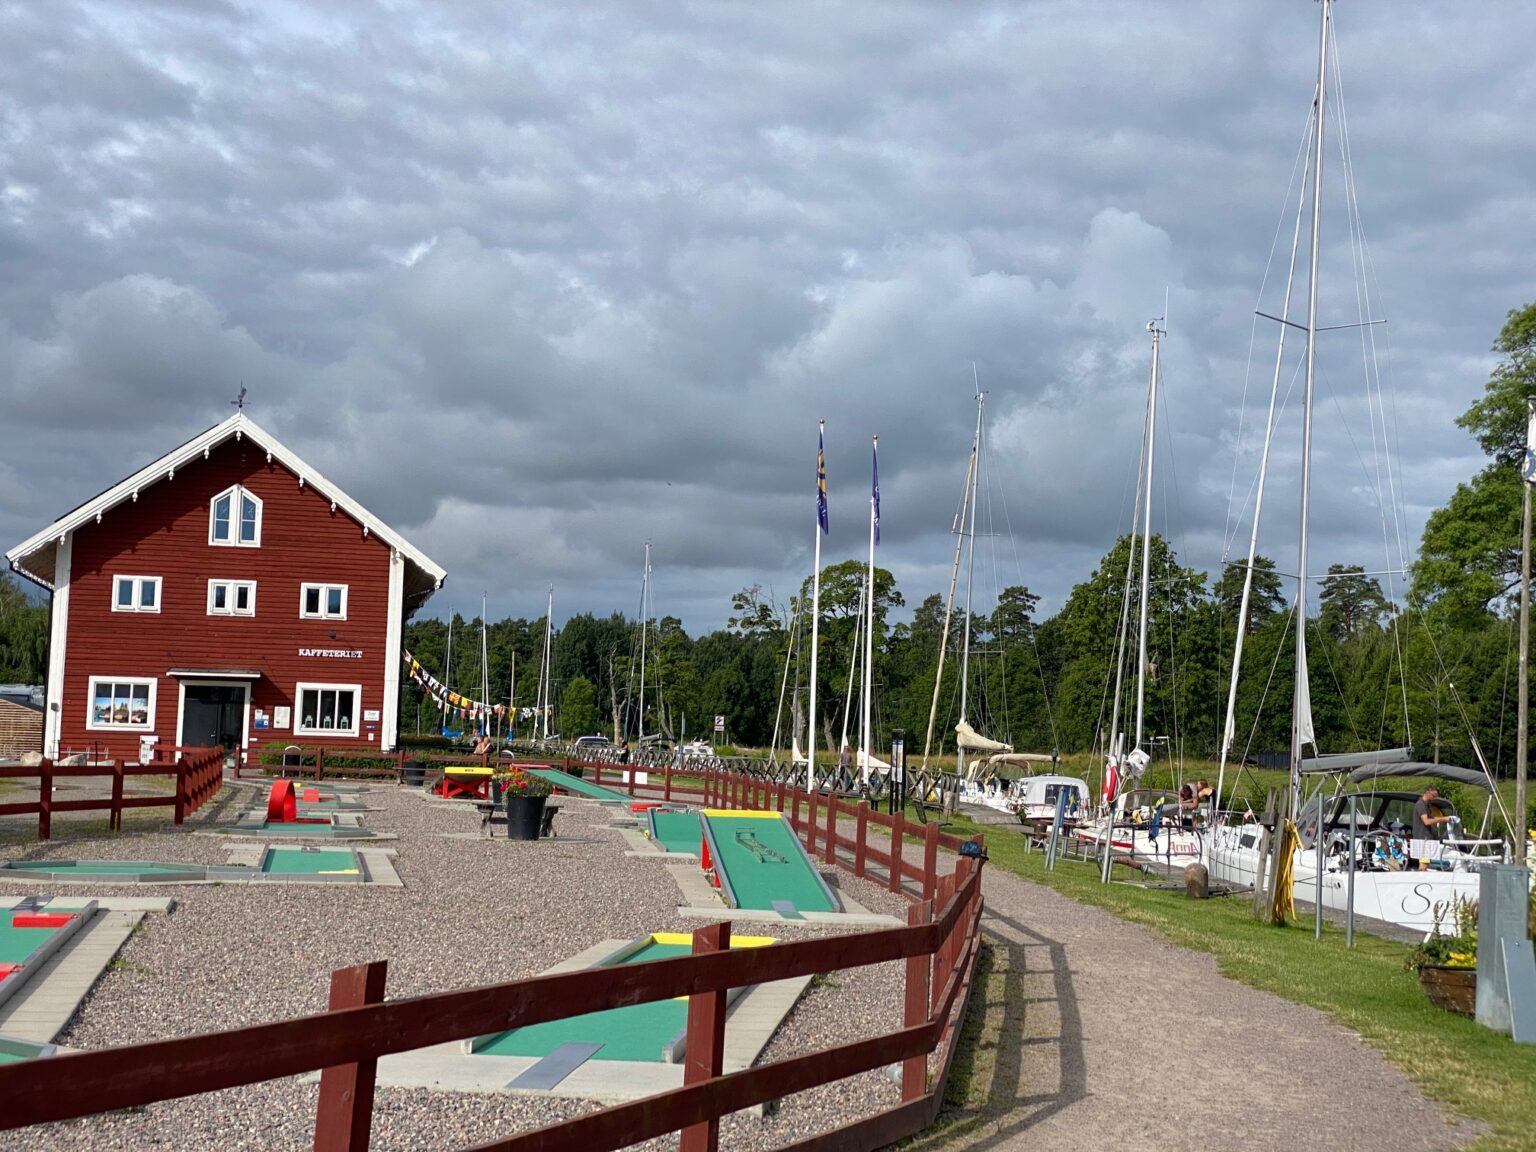 En röd byggnad med en intilliggande golfbana. Till höger i bild ligger ett 10-tal segelbåtar förtöjda efter varandra.